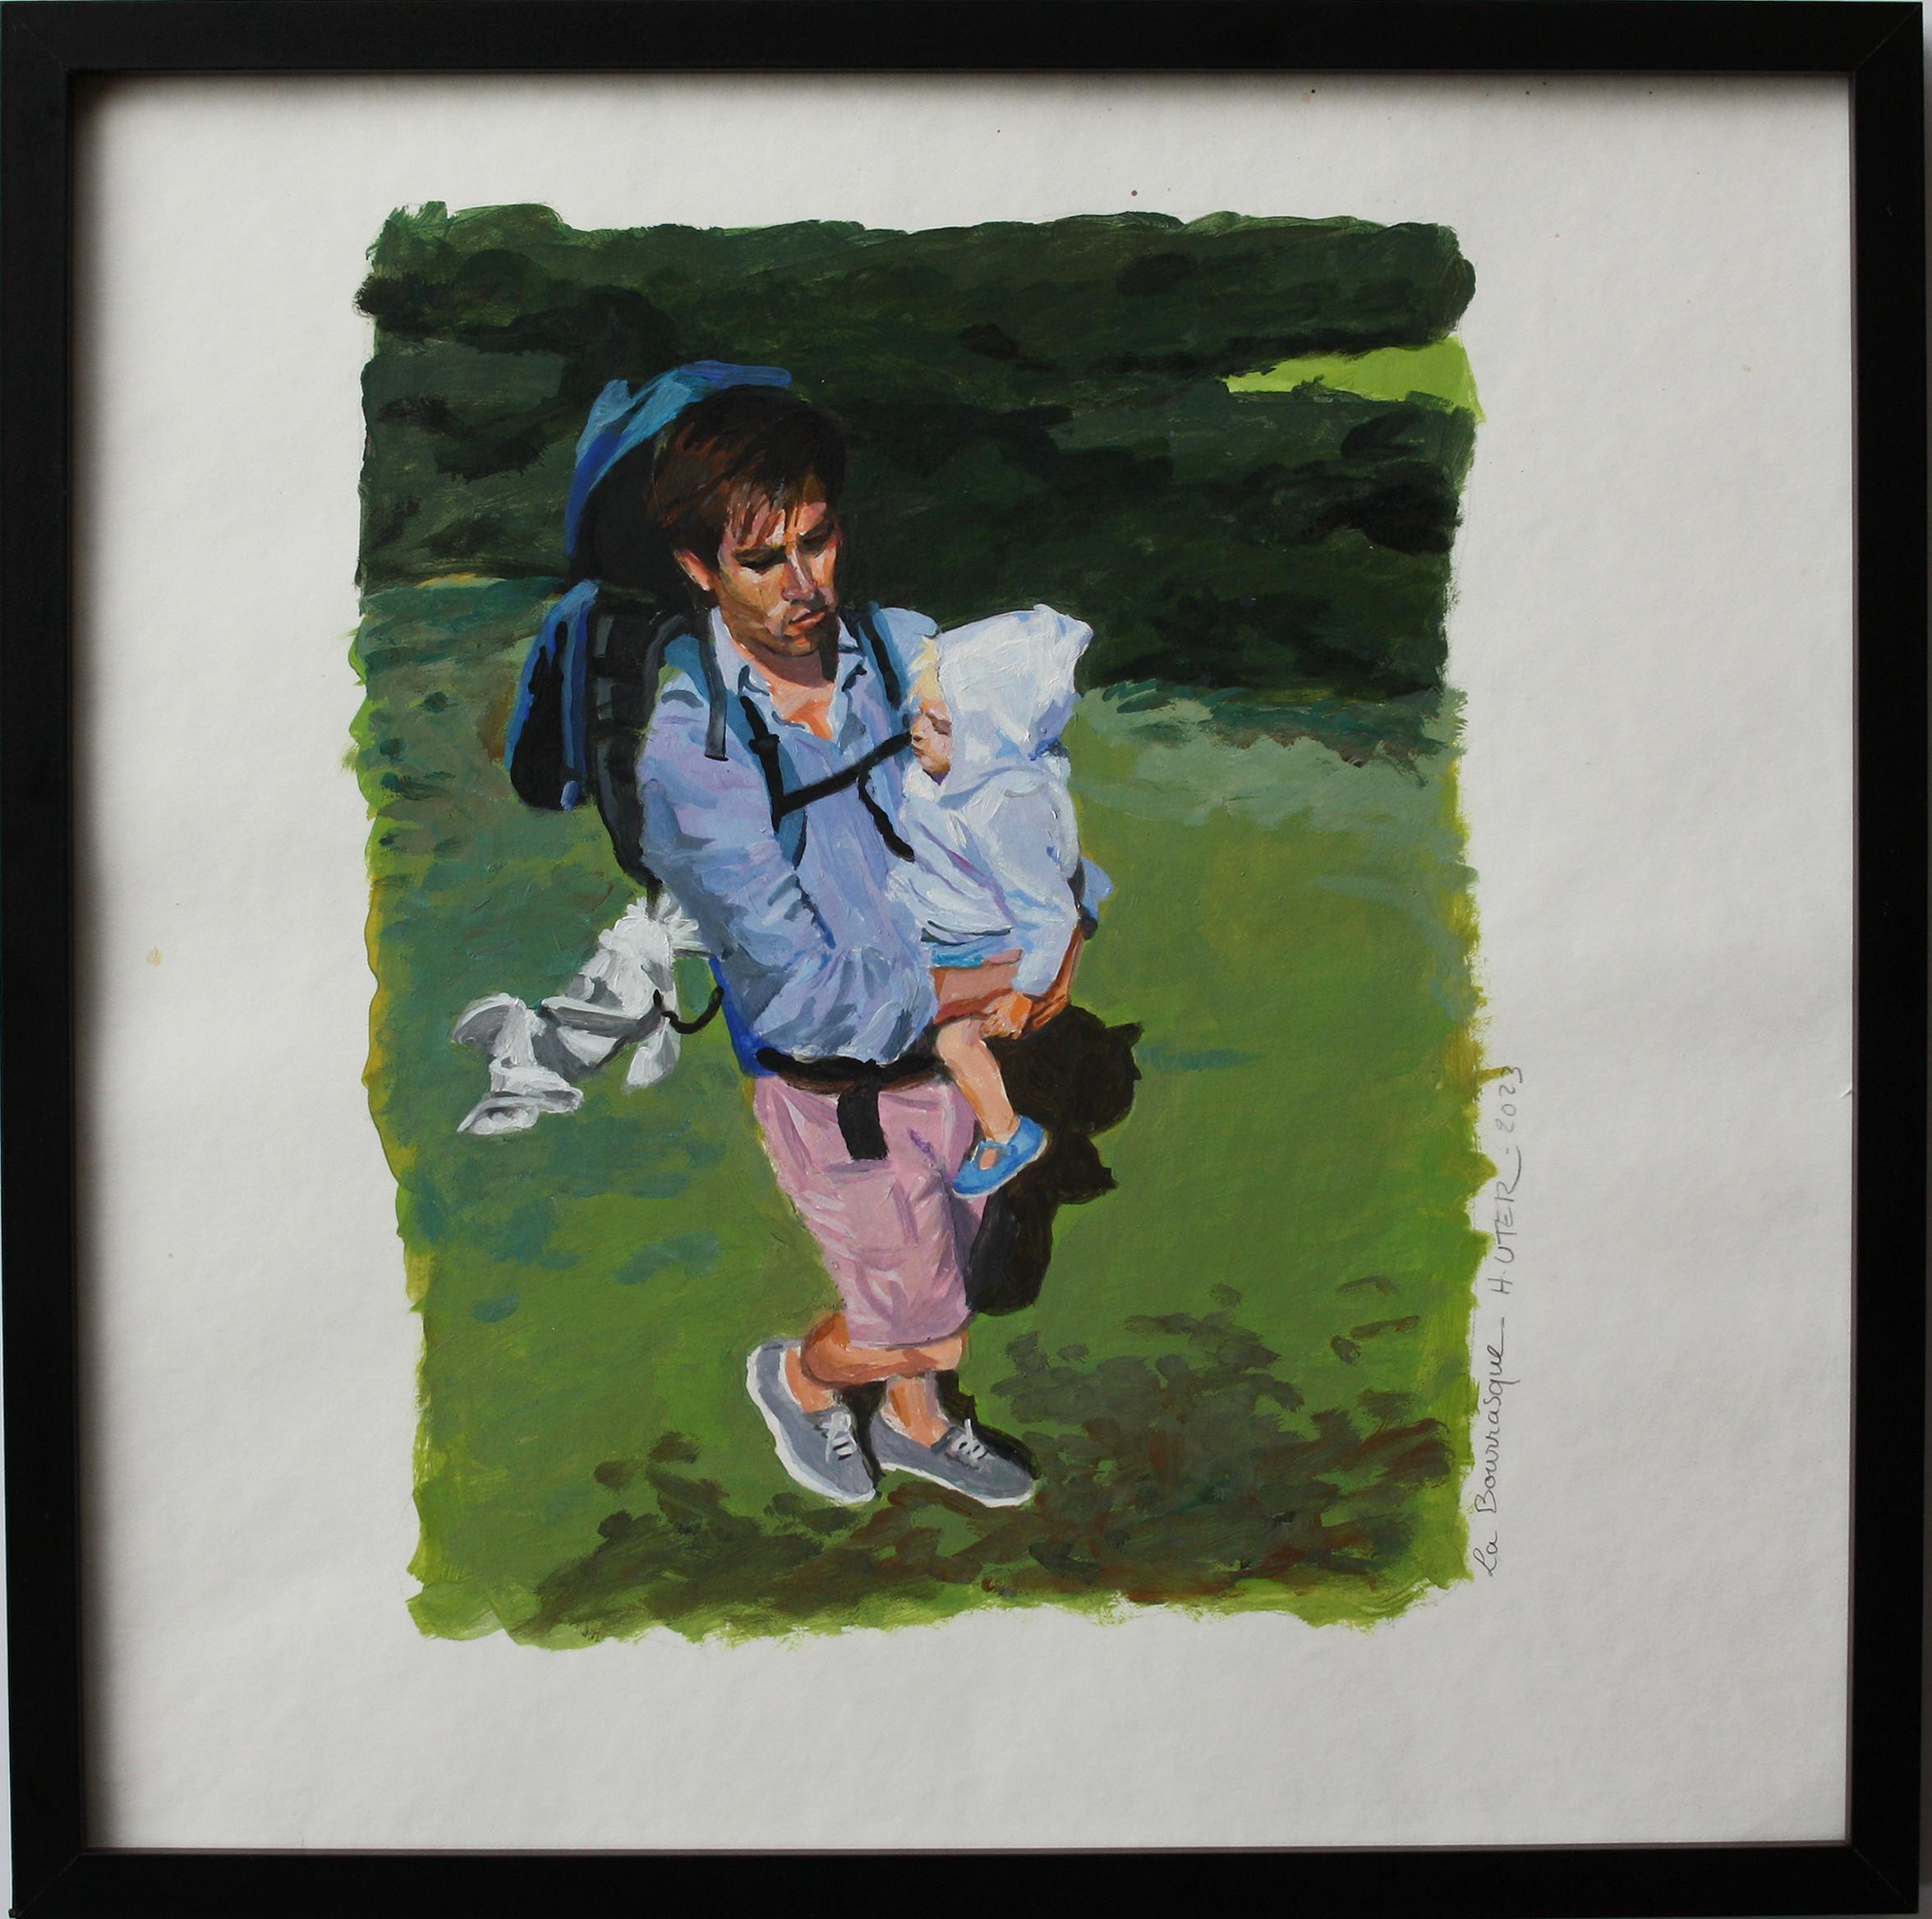 Öl auf Leinwand, 

Helen Uter ist eine etablierte französisch-amerikanische Malerin, die 1955 geboren wurde und in Donnery, in der Nähe von Orléans, Frankreich, lebt und arbeitet. In ihren Werken, die stark von Edward Hopper beeinflusst sind, setzt